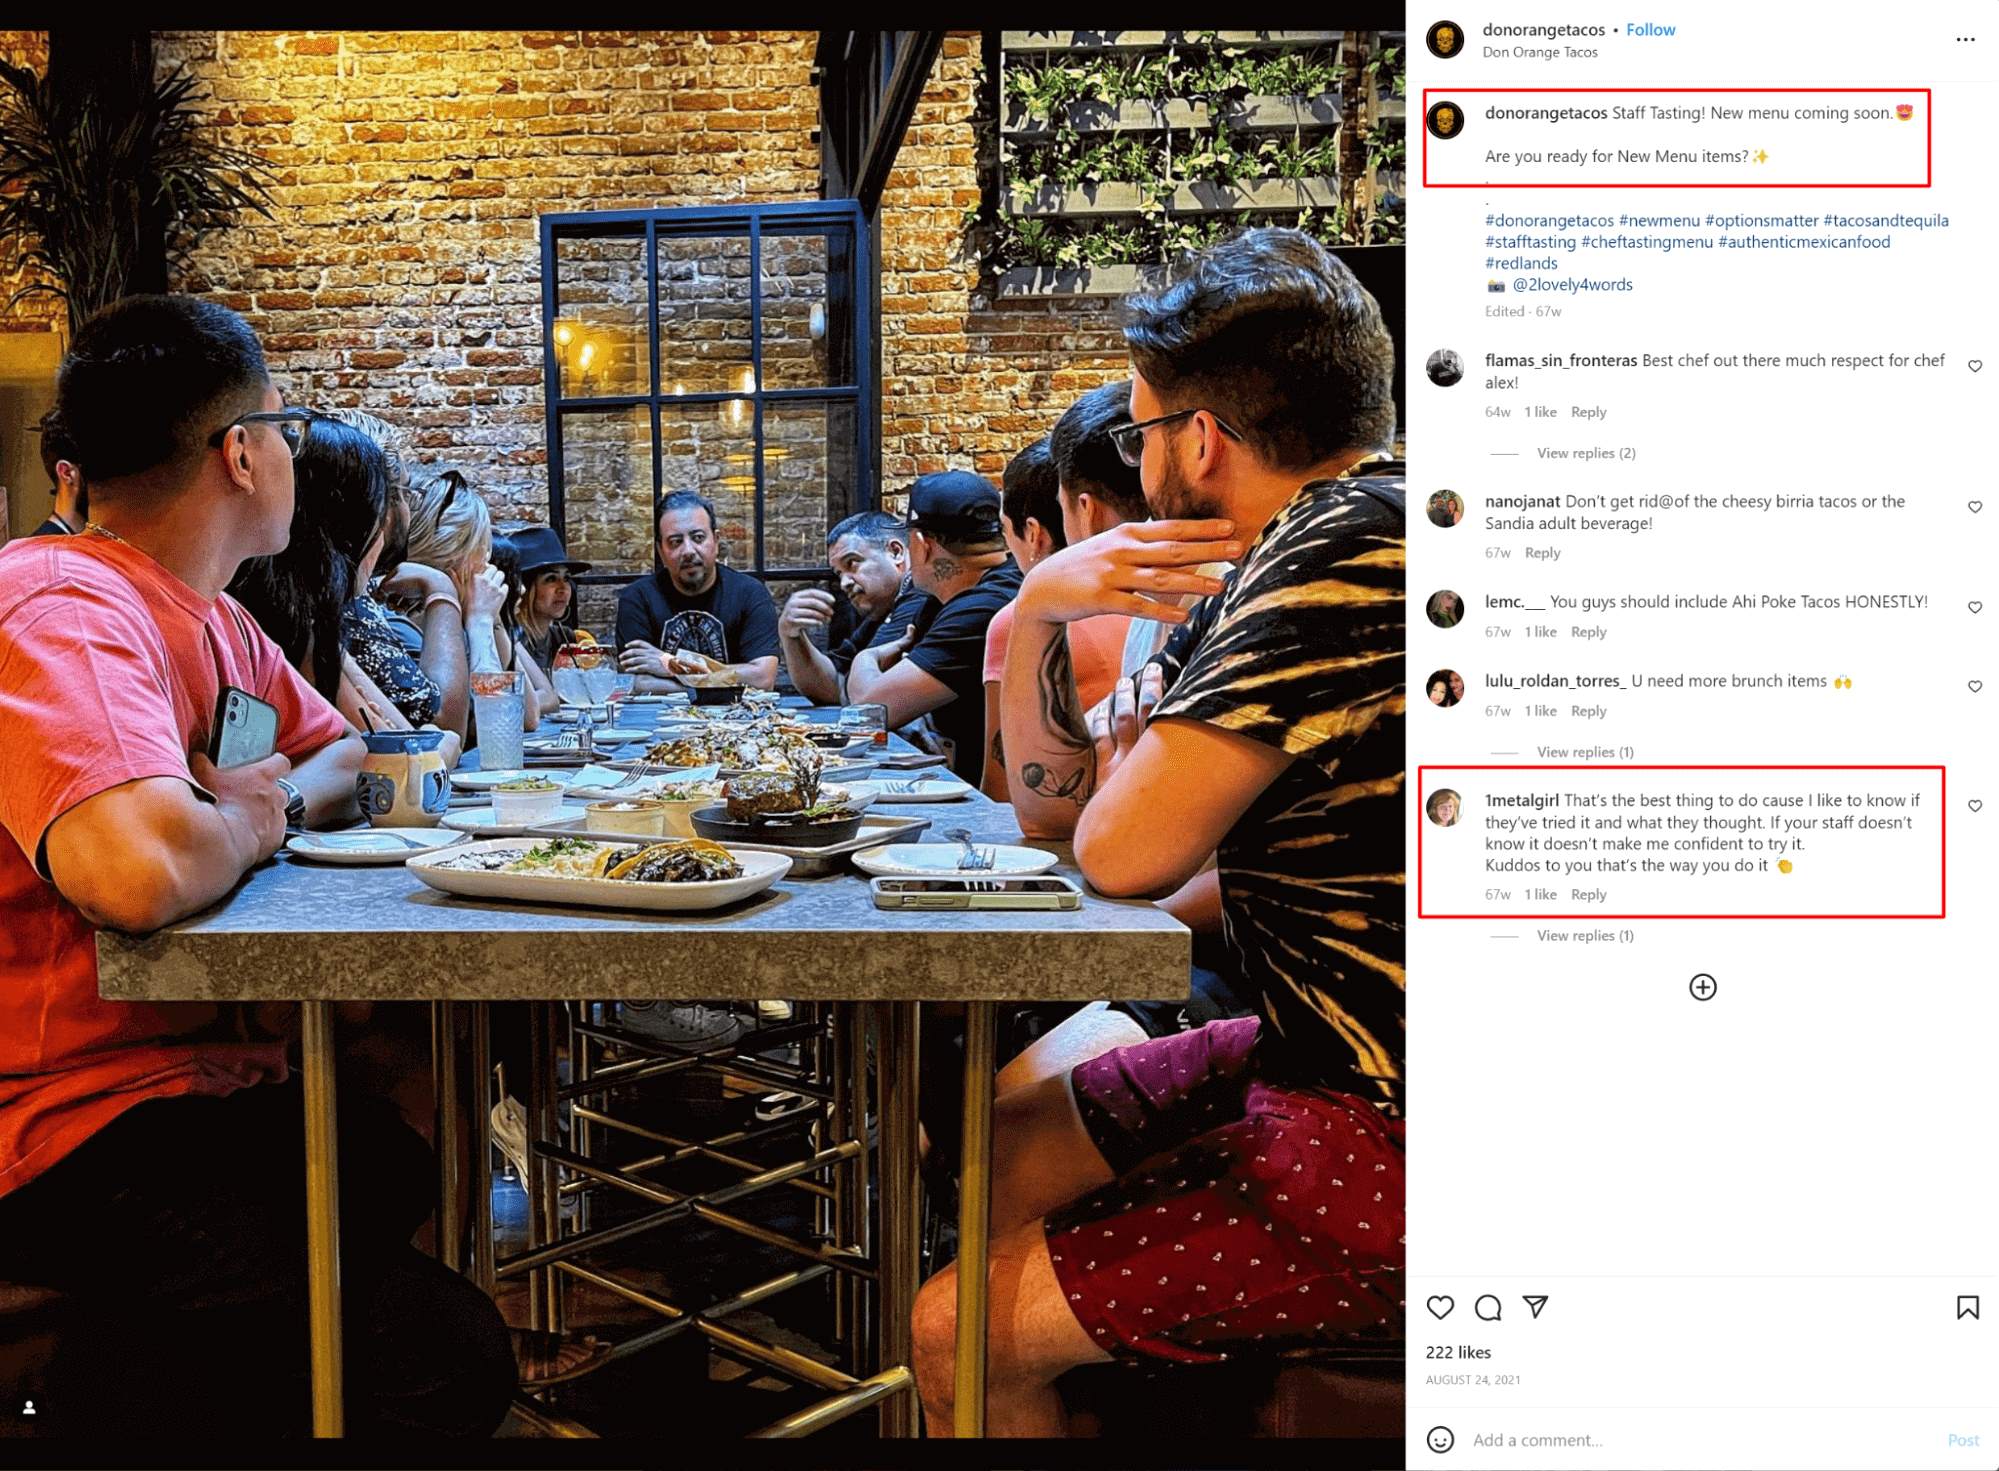 Don Orange Tacos de California en Instagram, el personal prueba el nuevo menú para recomendarlo a los clientes del restaurante